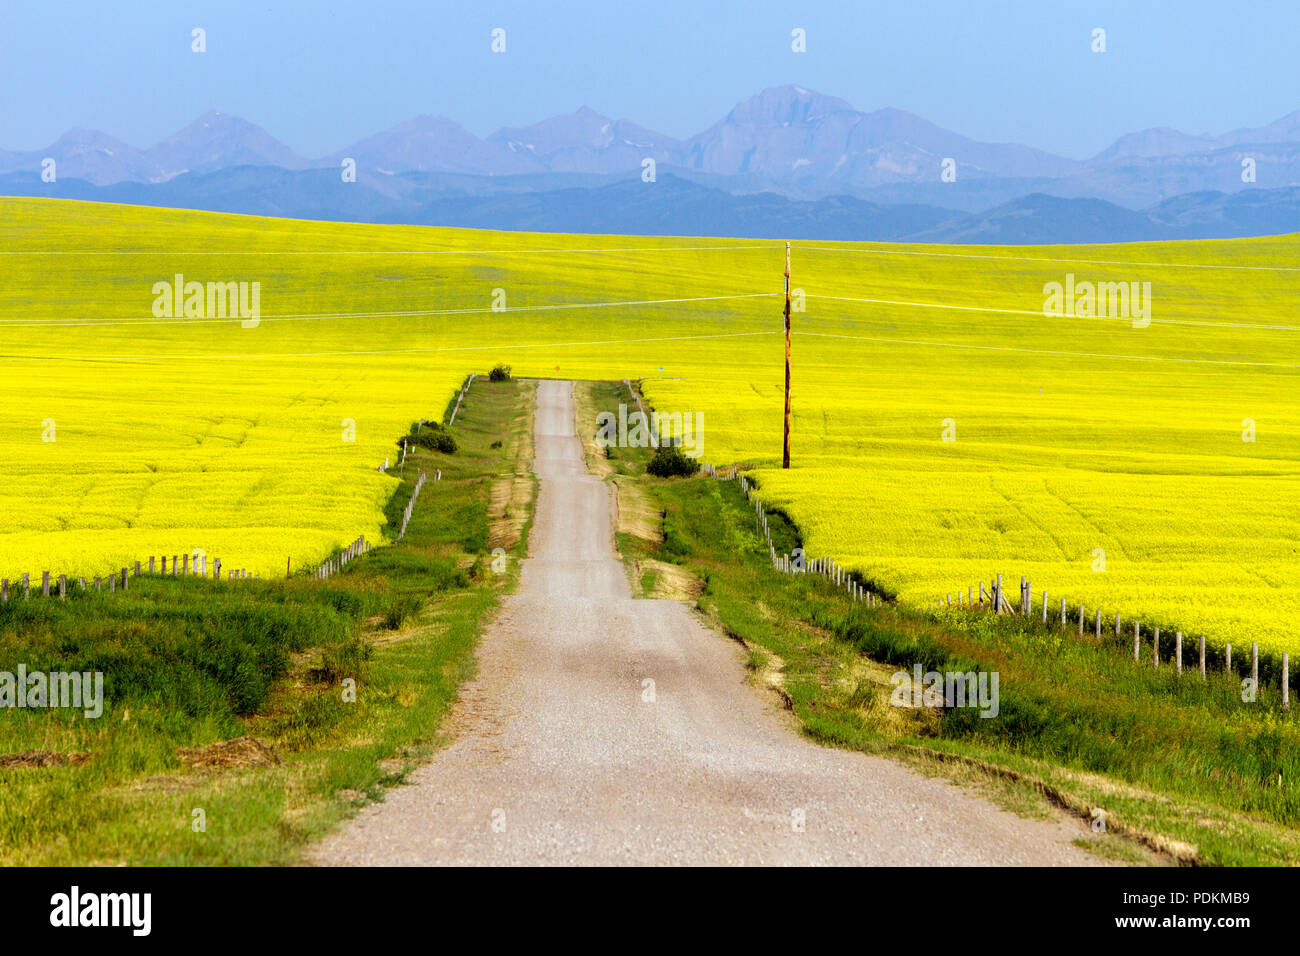 Un pays rural pittoresque paysage route jaune entourée d'un champ de canola en pleine floraison à Pincher Creek, Alberta, Canada. Banque D'Images